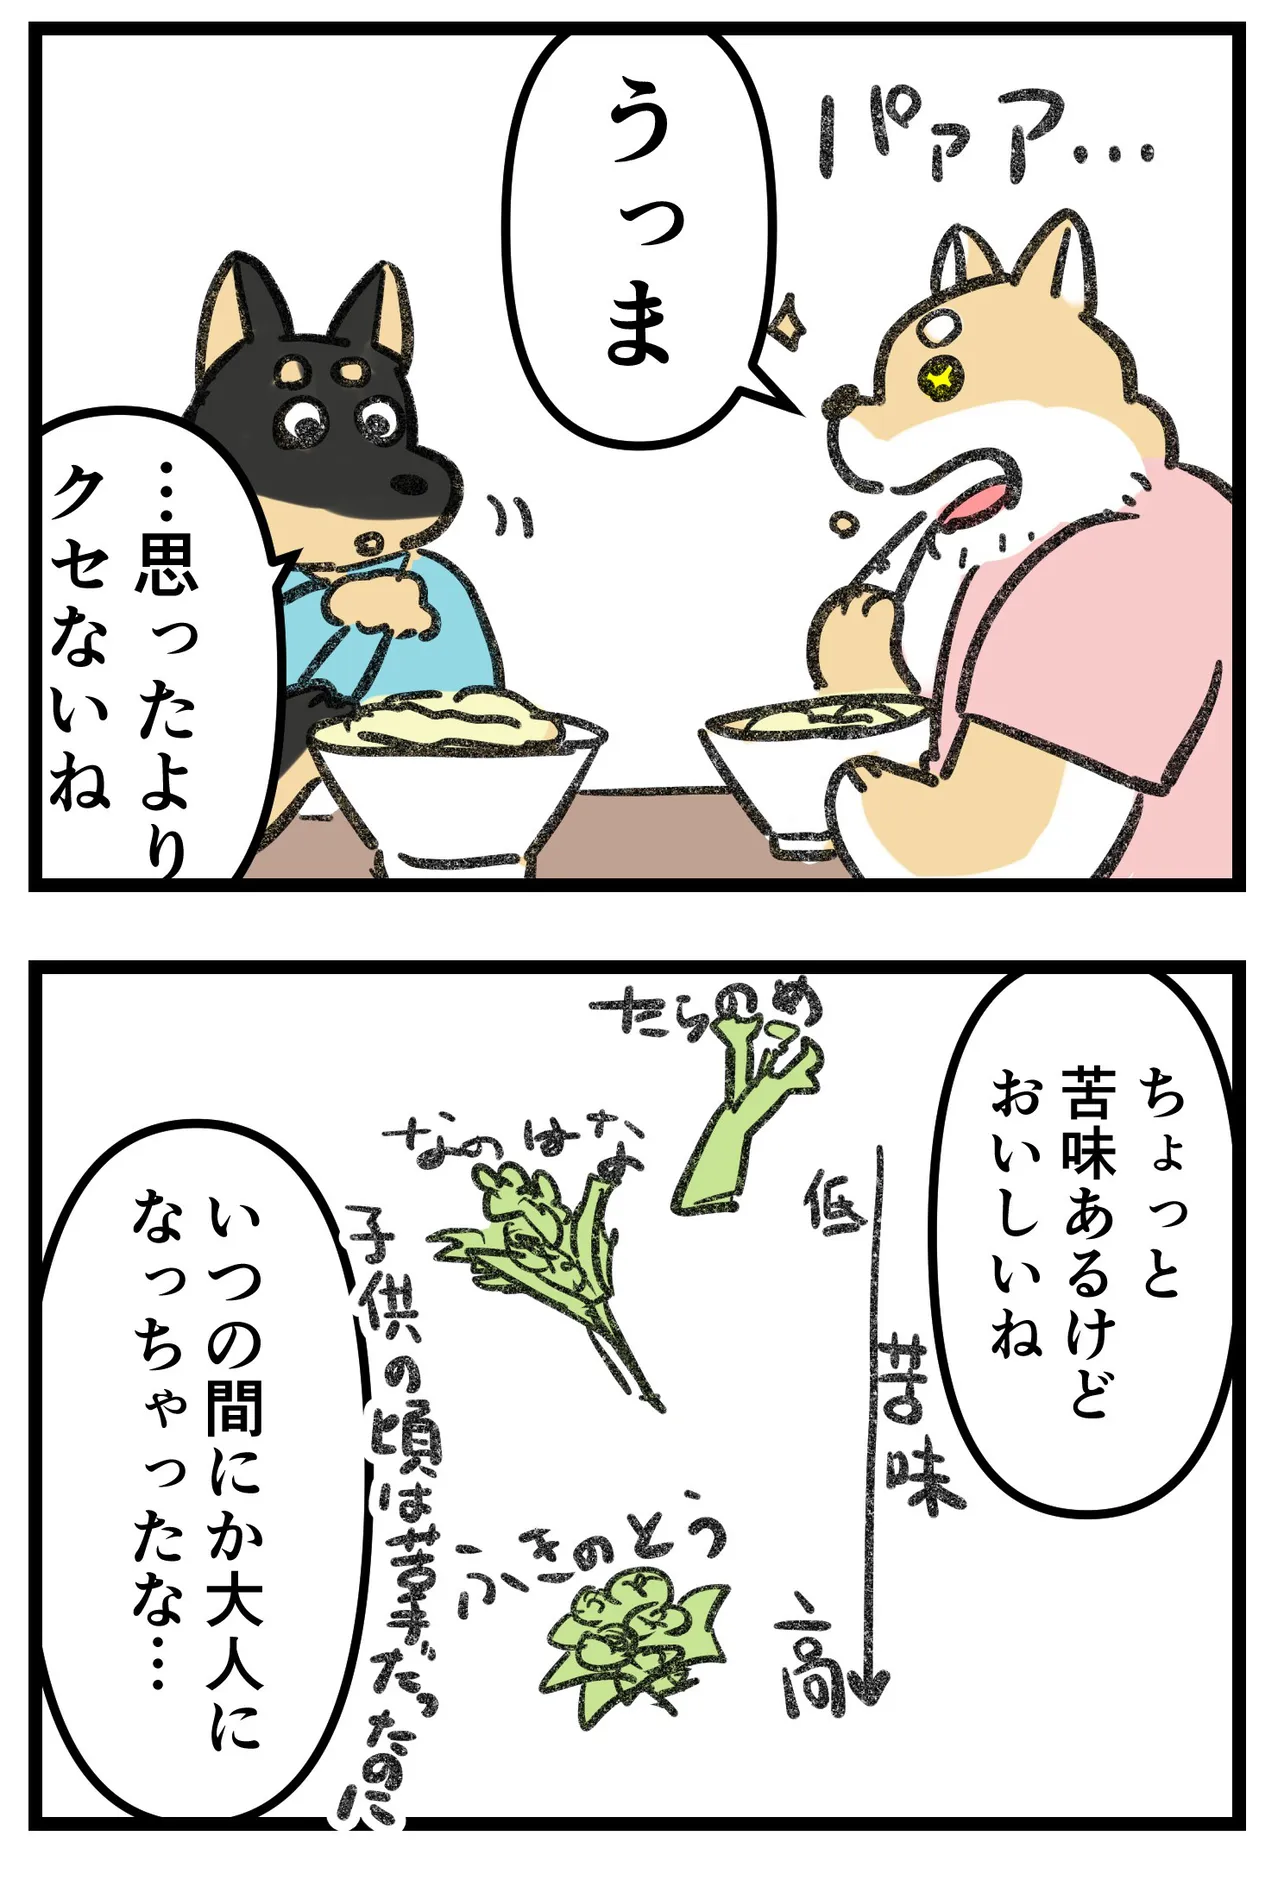 『柴犬二匹が山菜の天ぷらを作って食べる話』(12/16)